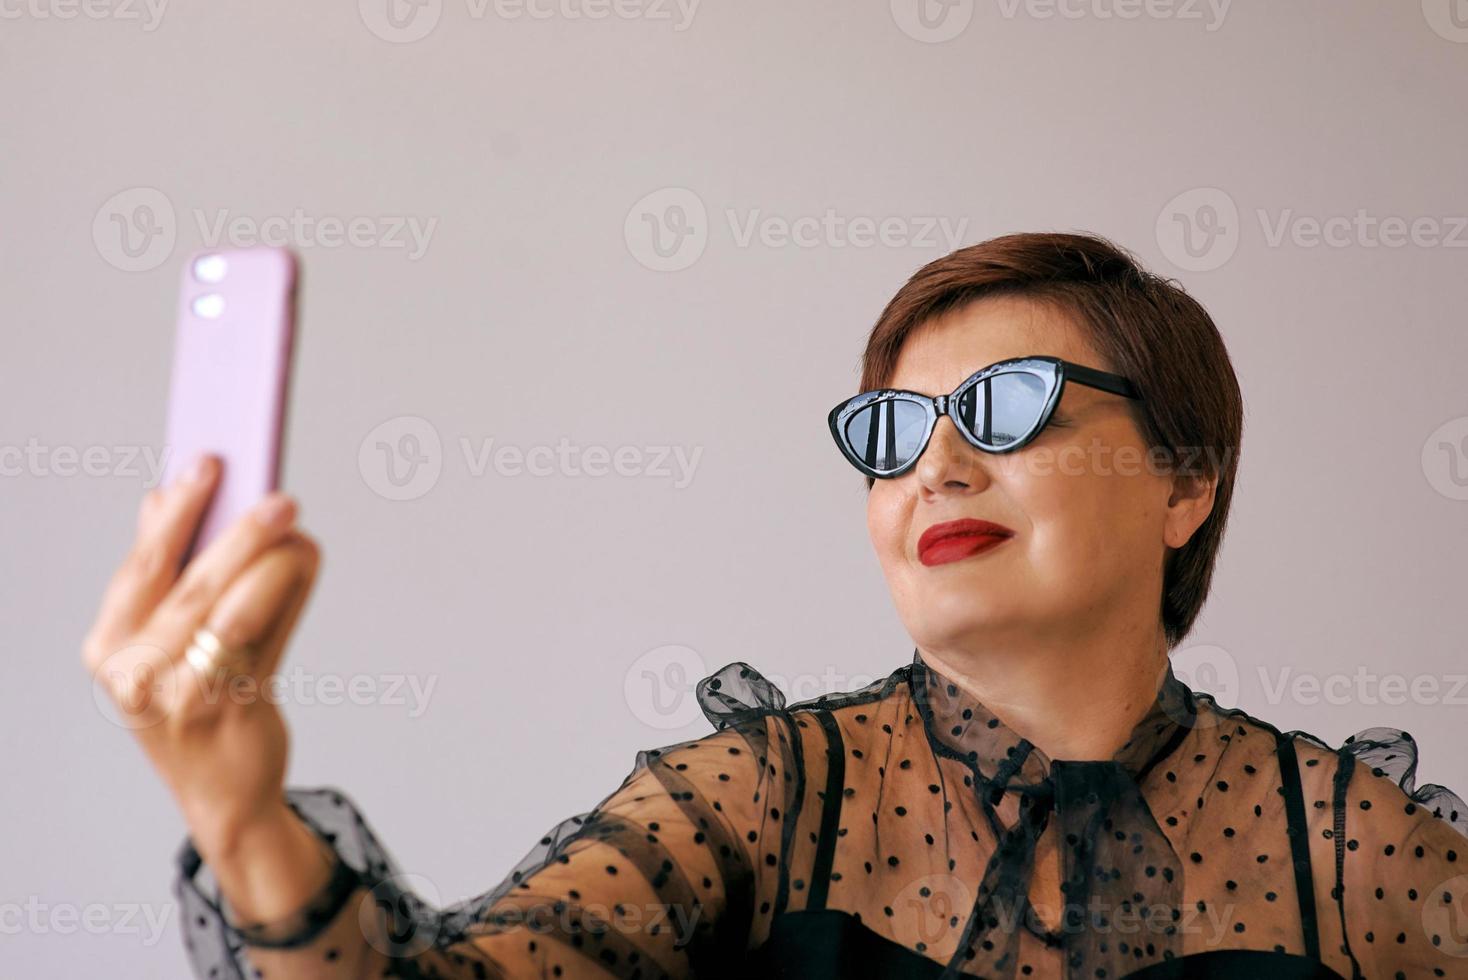 elegante mujer mayor madura en blusa roja con videollamadas de teléfono móvil o haciendo selfie. diversión, fiesta, estilo, estilo de vida, tecnología, concepto de celebración foto